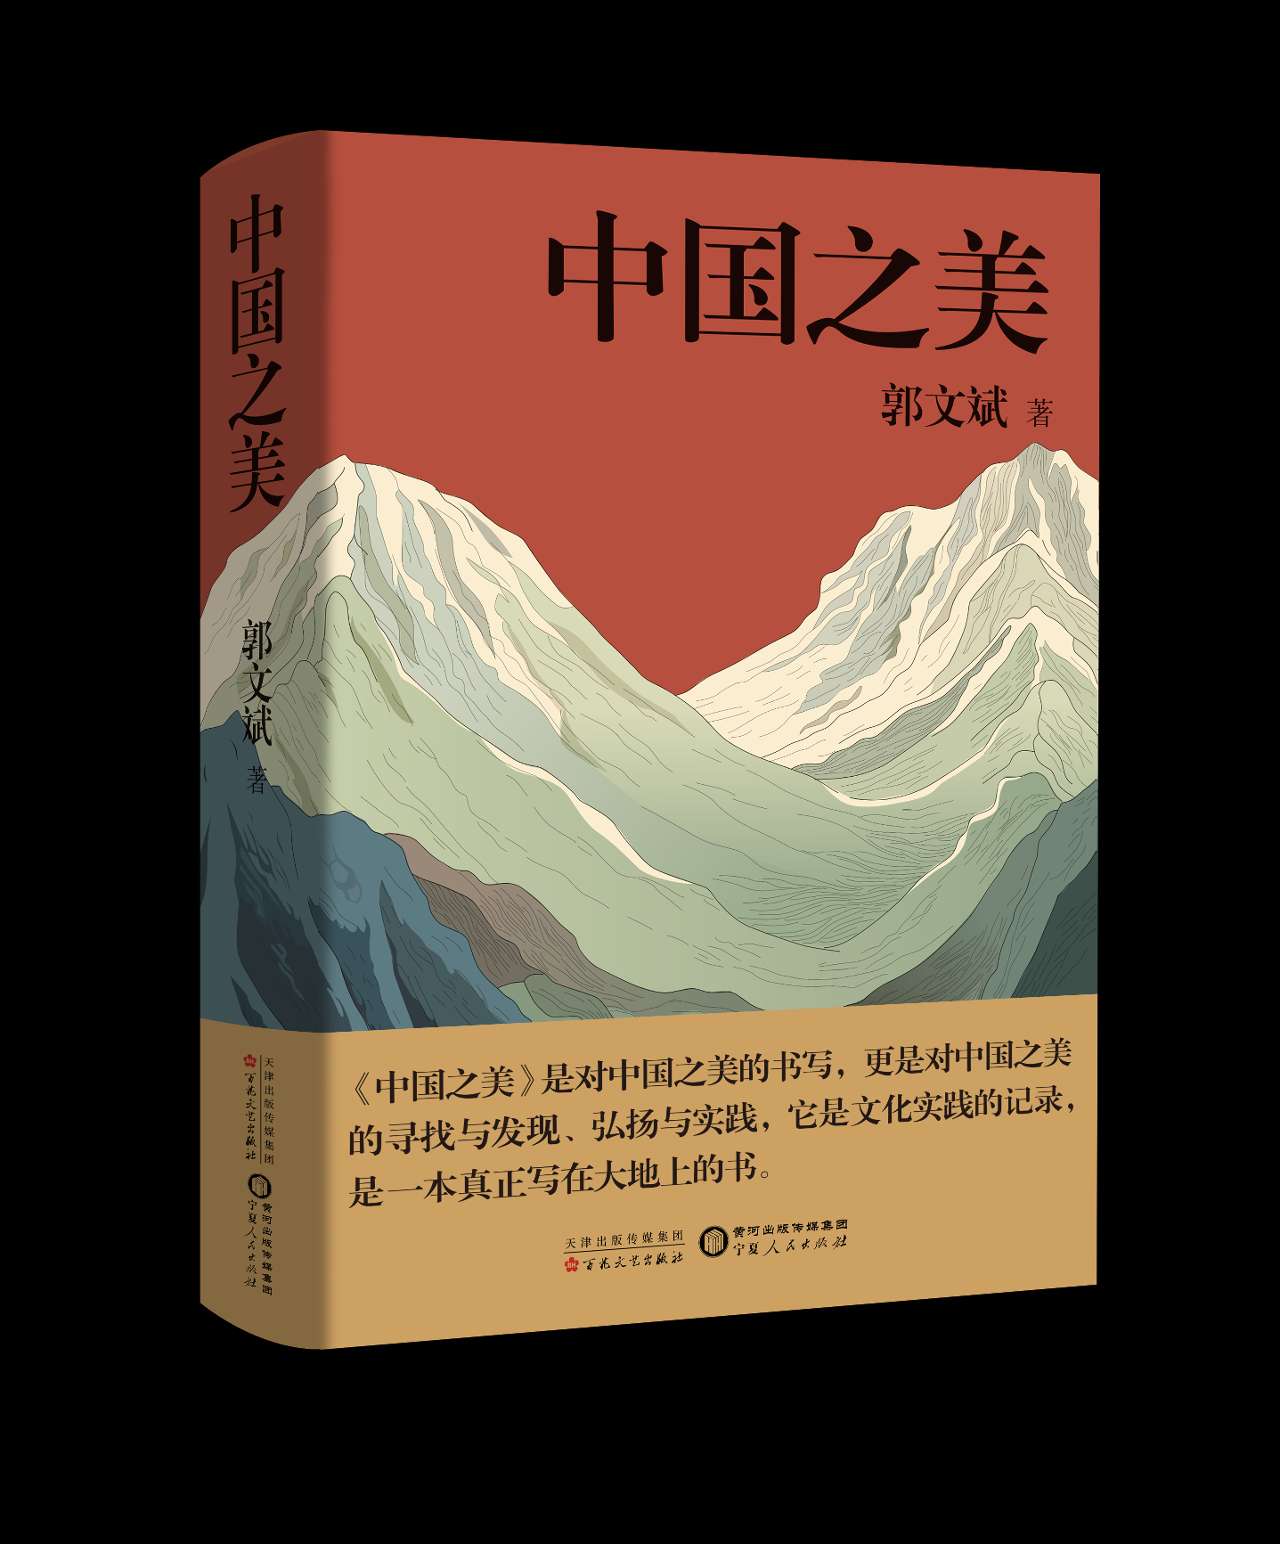 郭文斌散文集《中国之美》：寻找中华优秀传统文化的根与魂